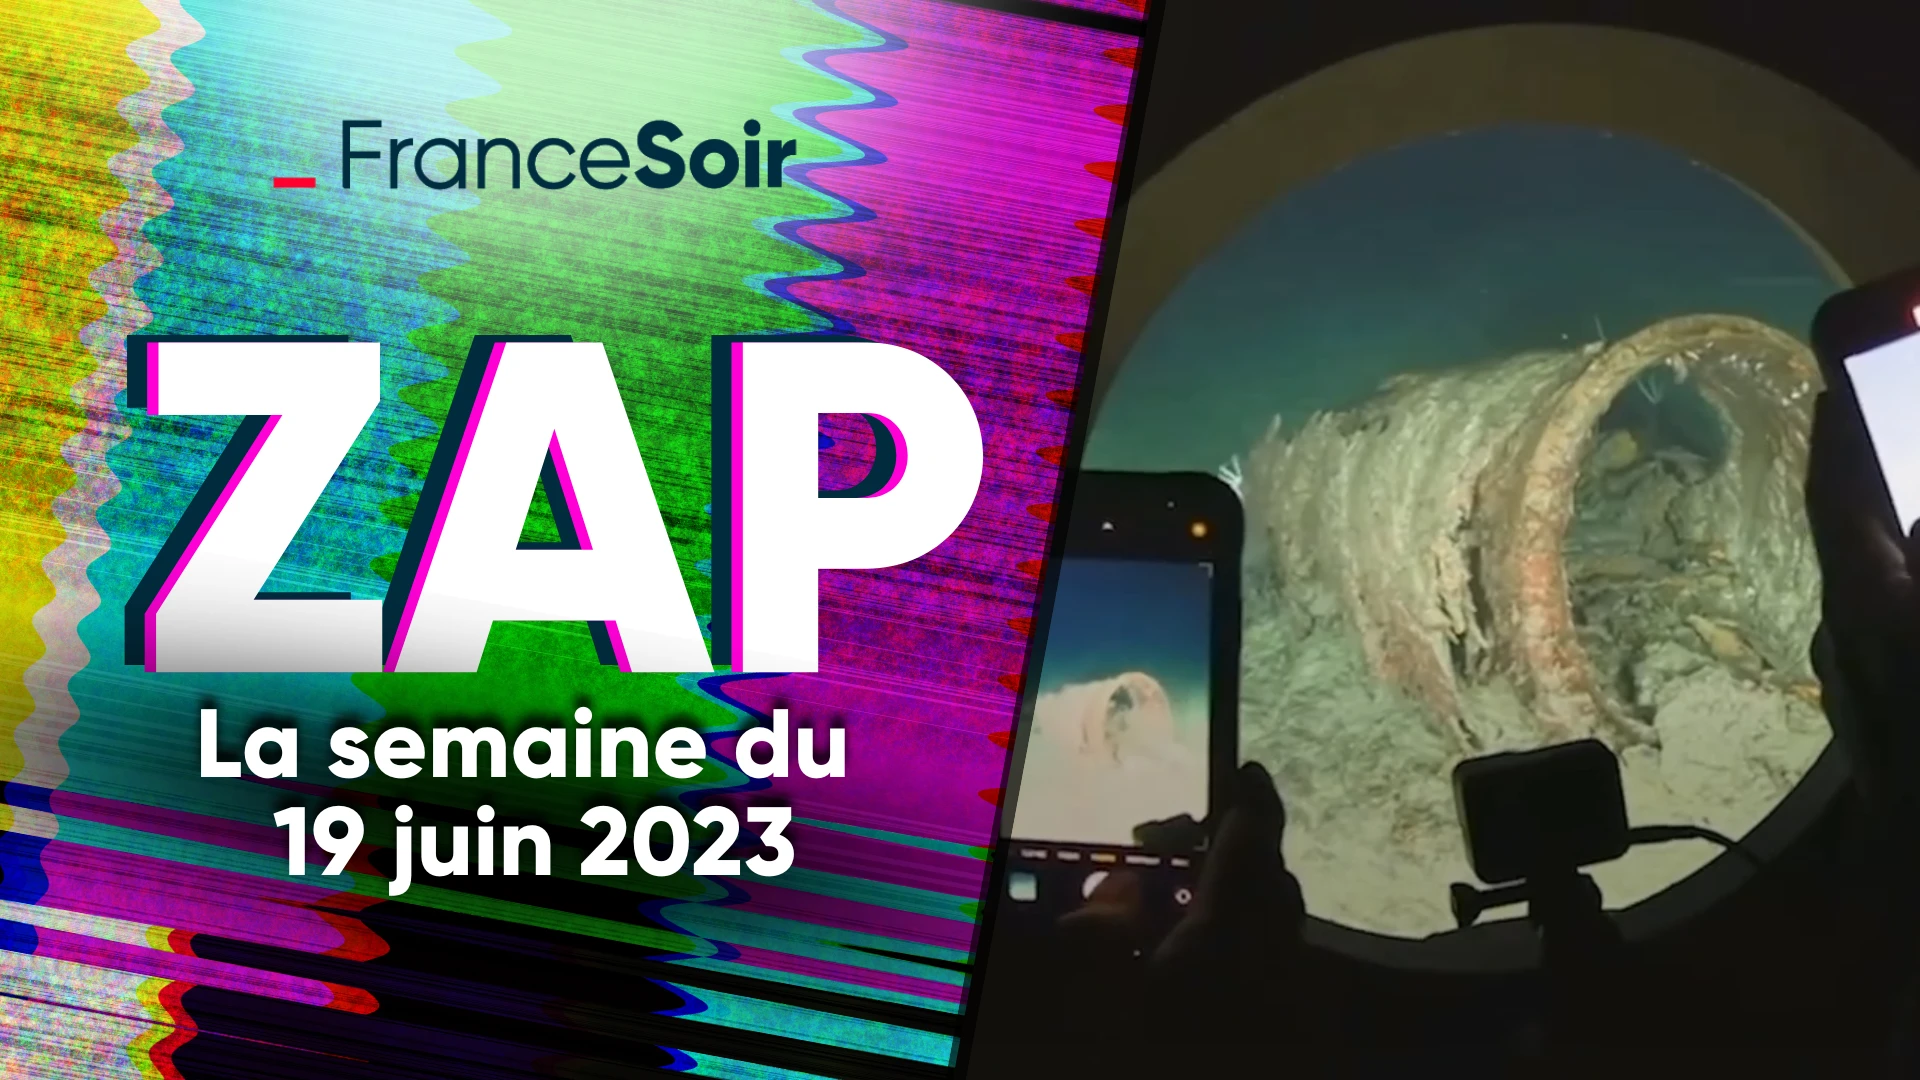 Zap de la semaine du 19 juin 2023 : France-Soir fait condamner le journal Le Monde, la réforme des retraites ne comblera pas le déficit, sous-marin disparu en mer…